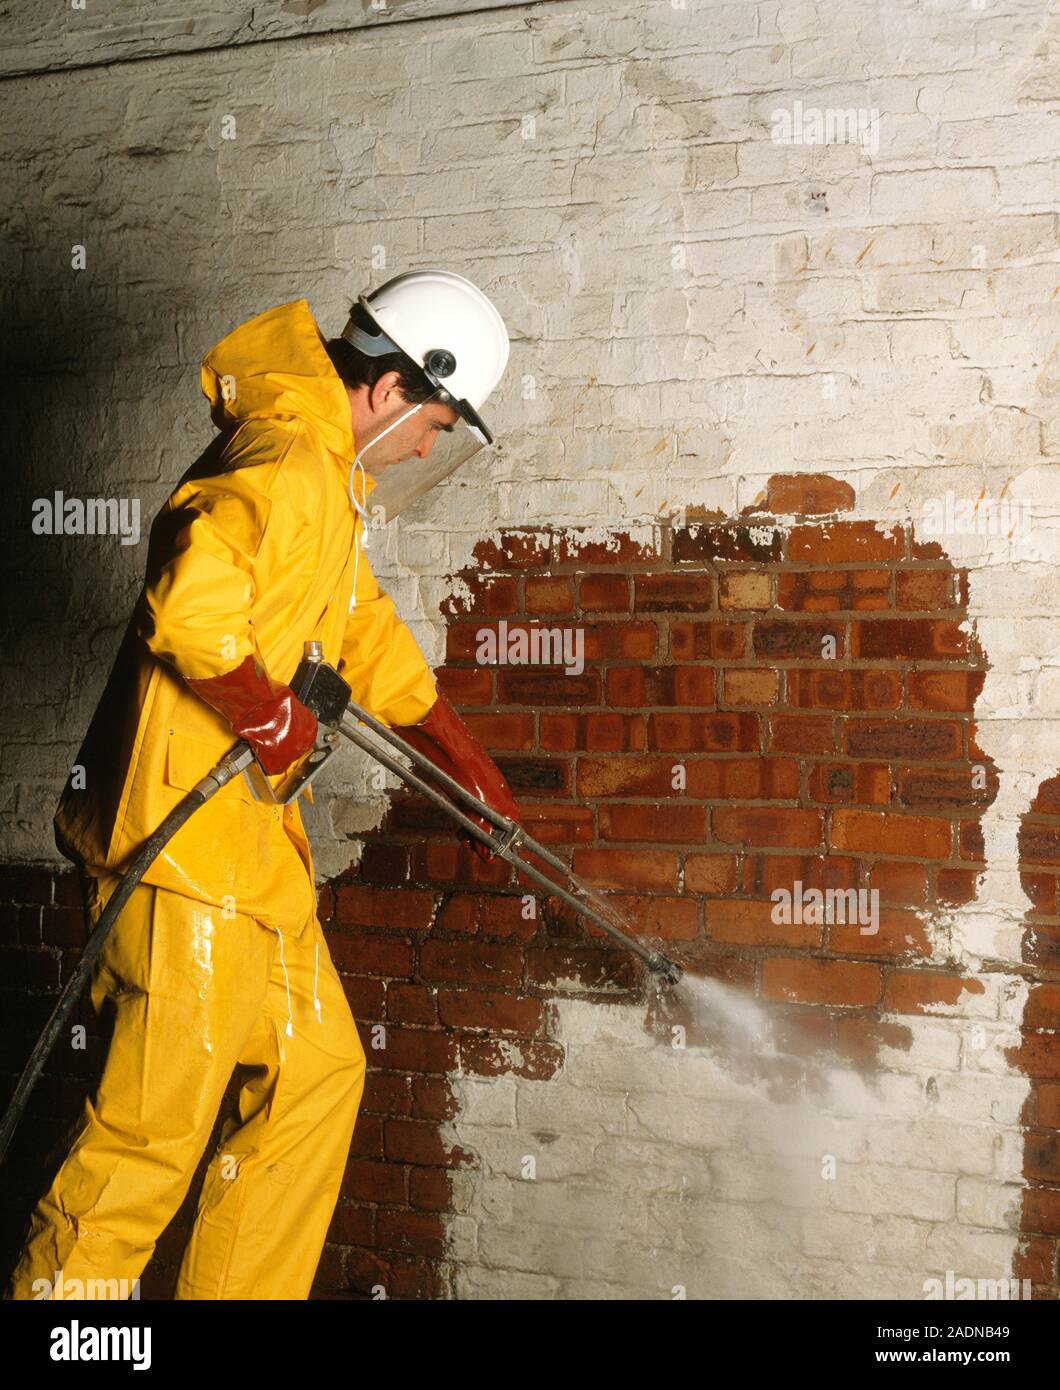 La eliminación de la pintura. Trabajador de la construcción con un chorro  de agua a alta presión para limpiar la pintura de una pared de ladrillo. Él  es el uso de ropa